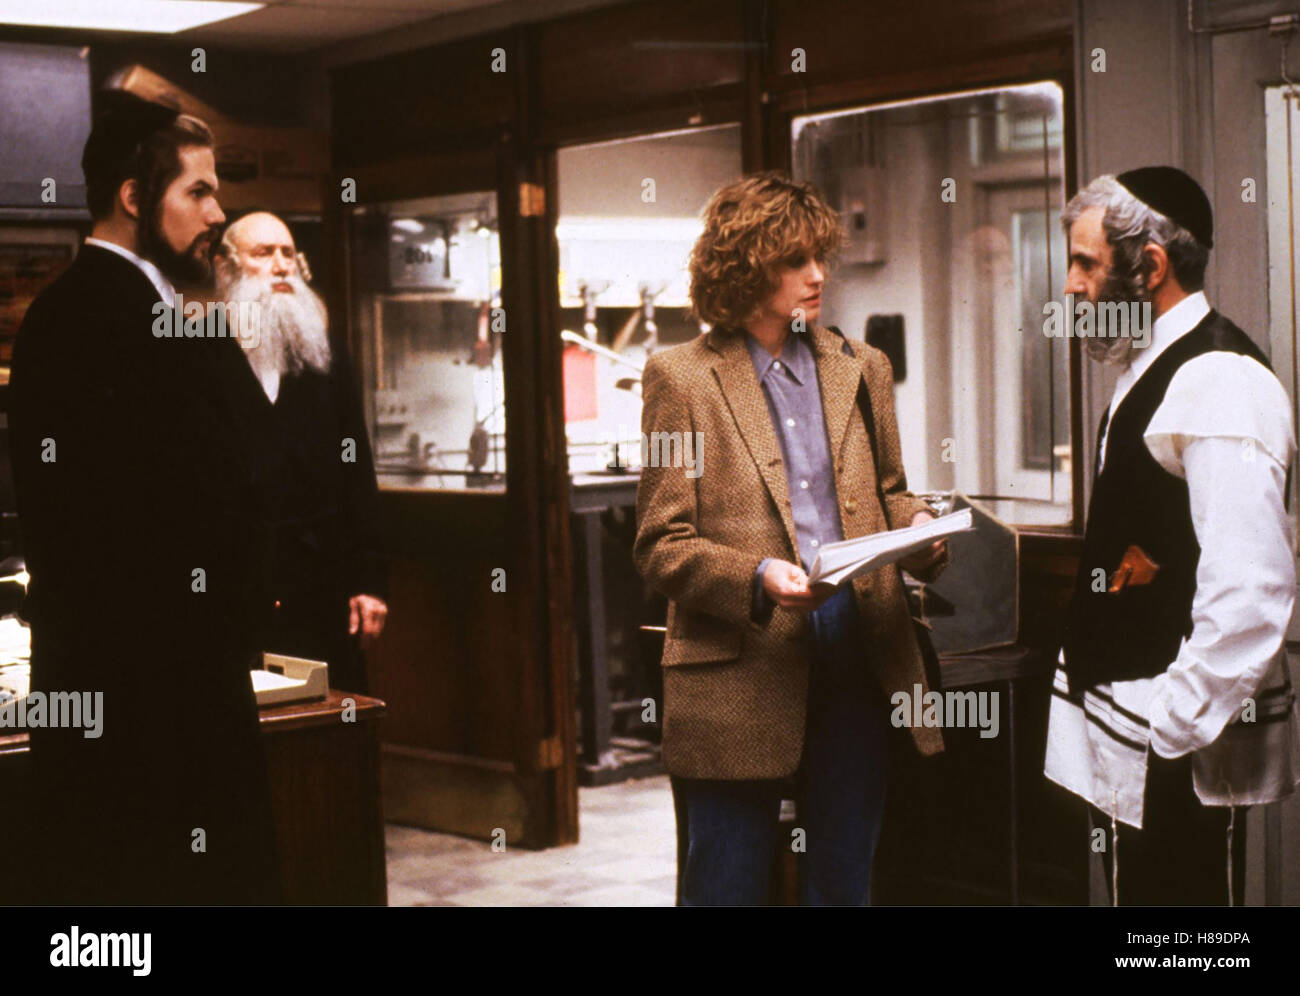 Sanfte Augen lügen nicht, (A STRANGER AMONG US), USA 1992, Regie: Sidney Lumet, ERIC THAL, LEE RICHARDSON, MELANIE GRIFFITH, DAVID ROSENBAUM Stock Photo